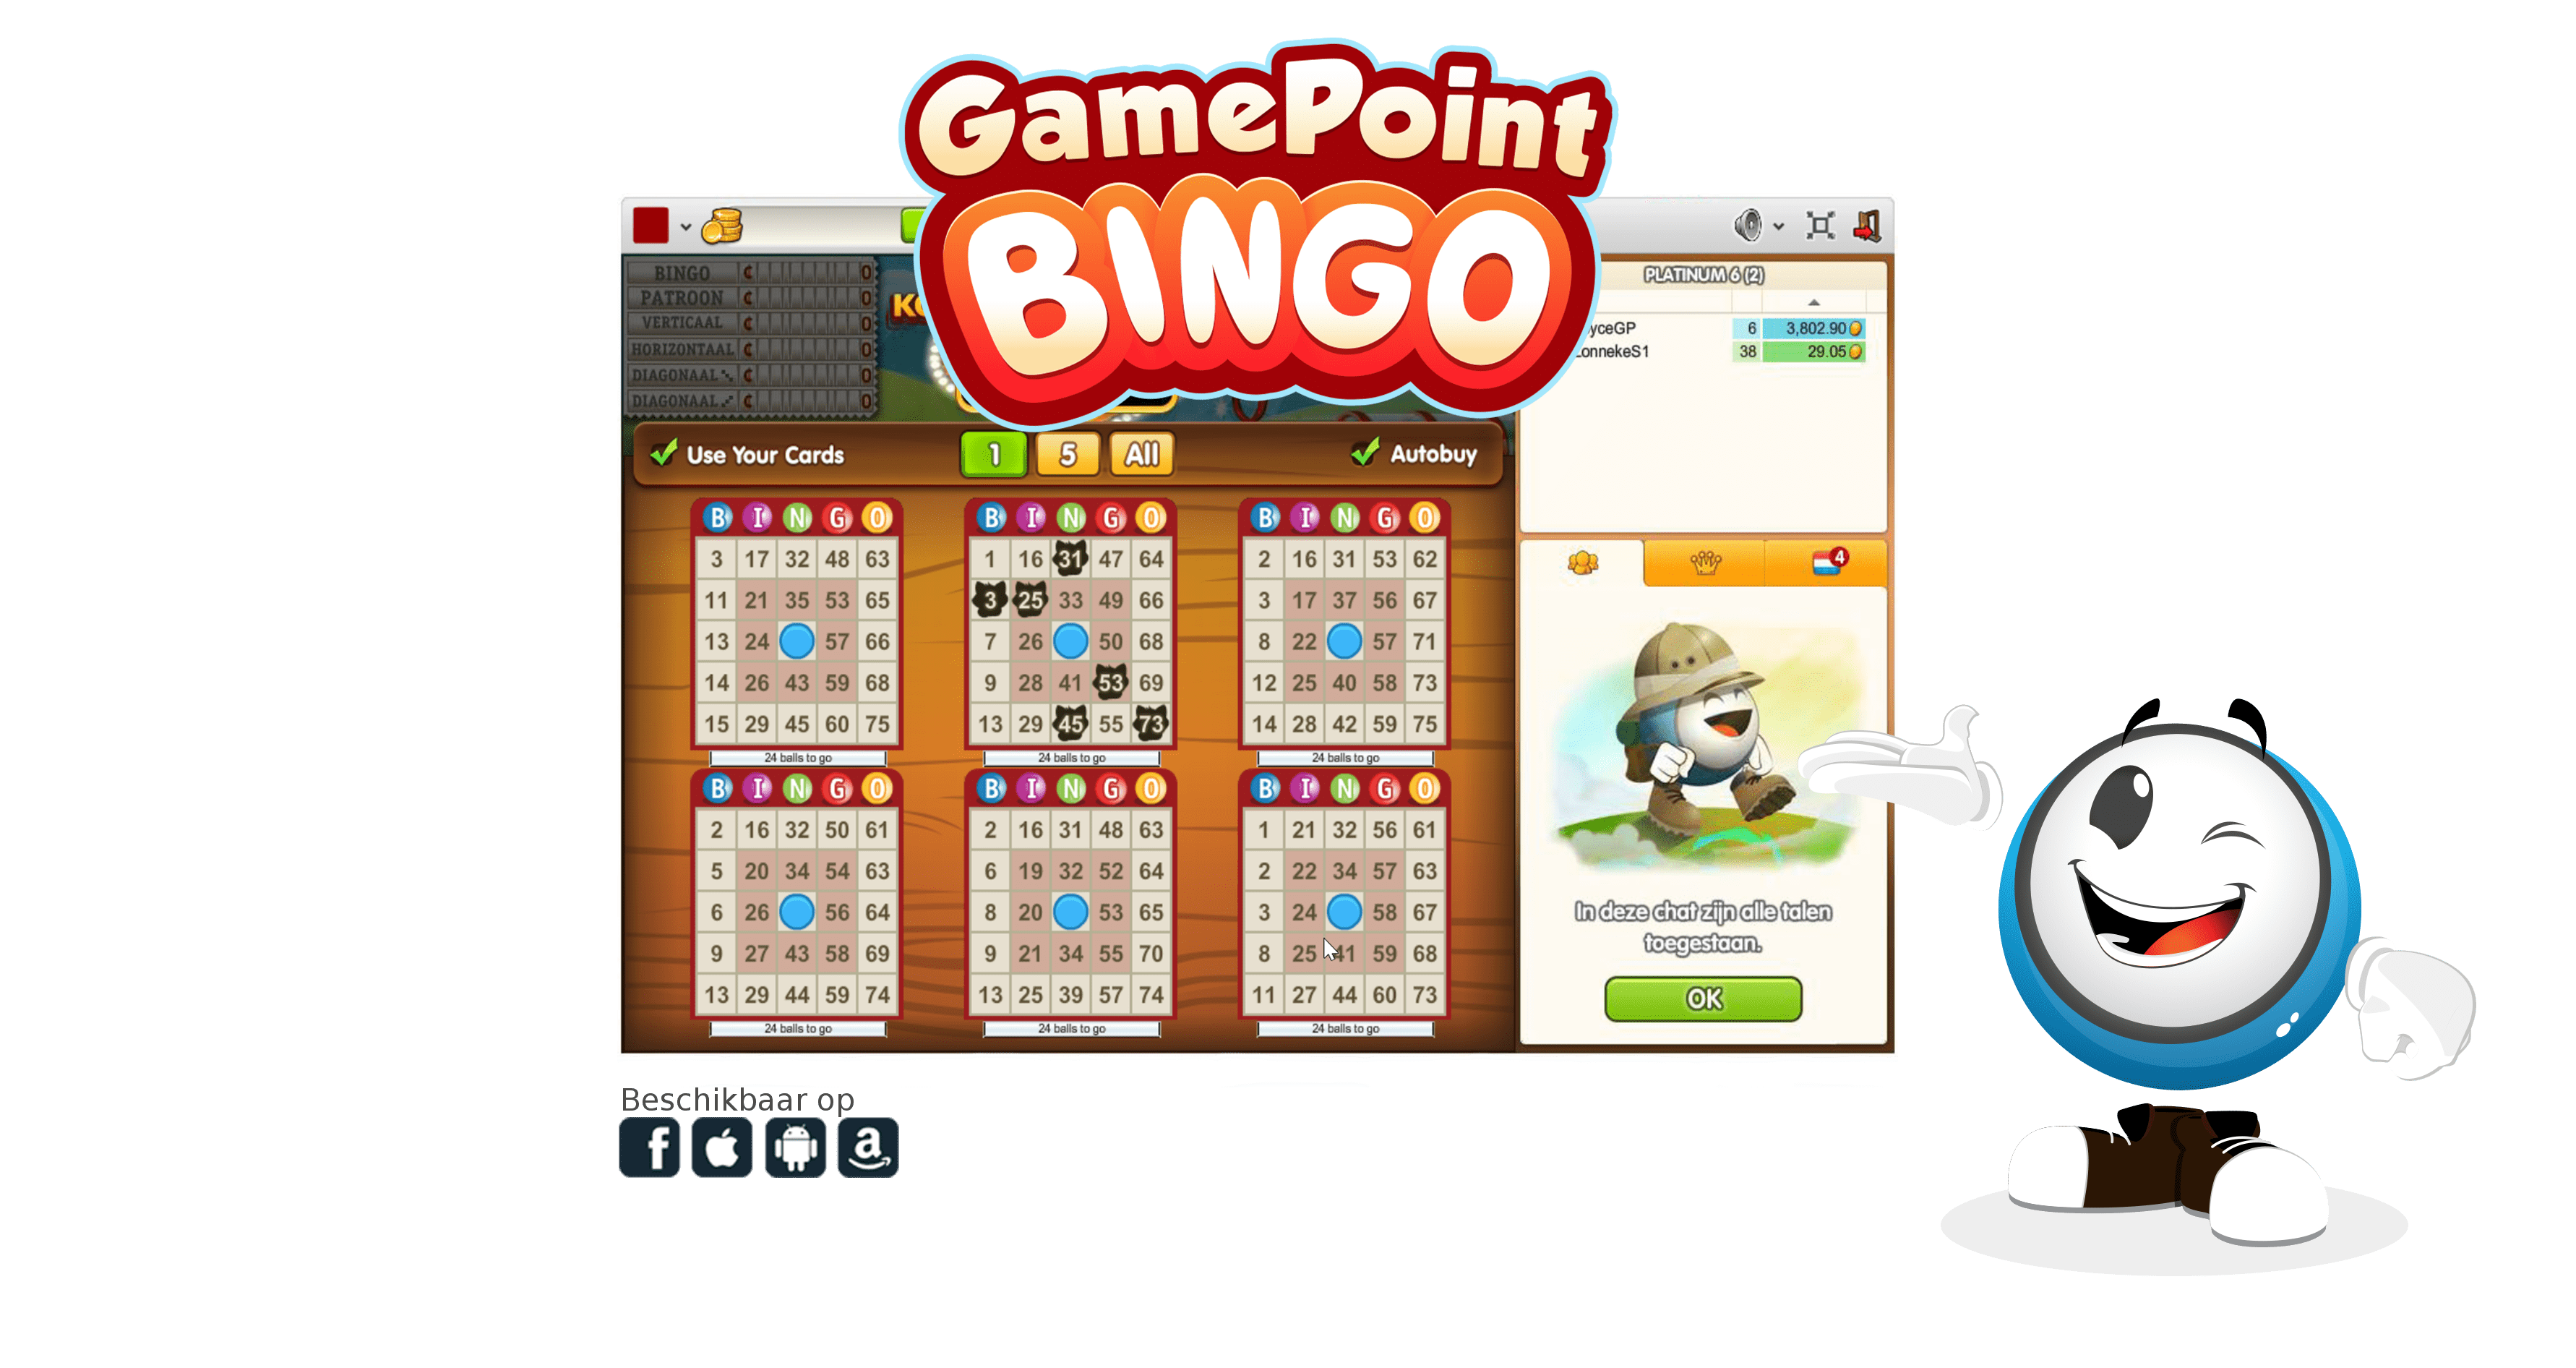 Win Bingo Online